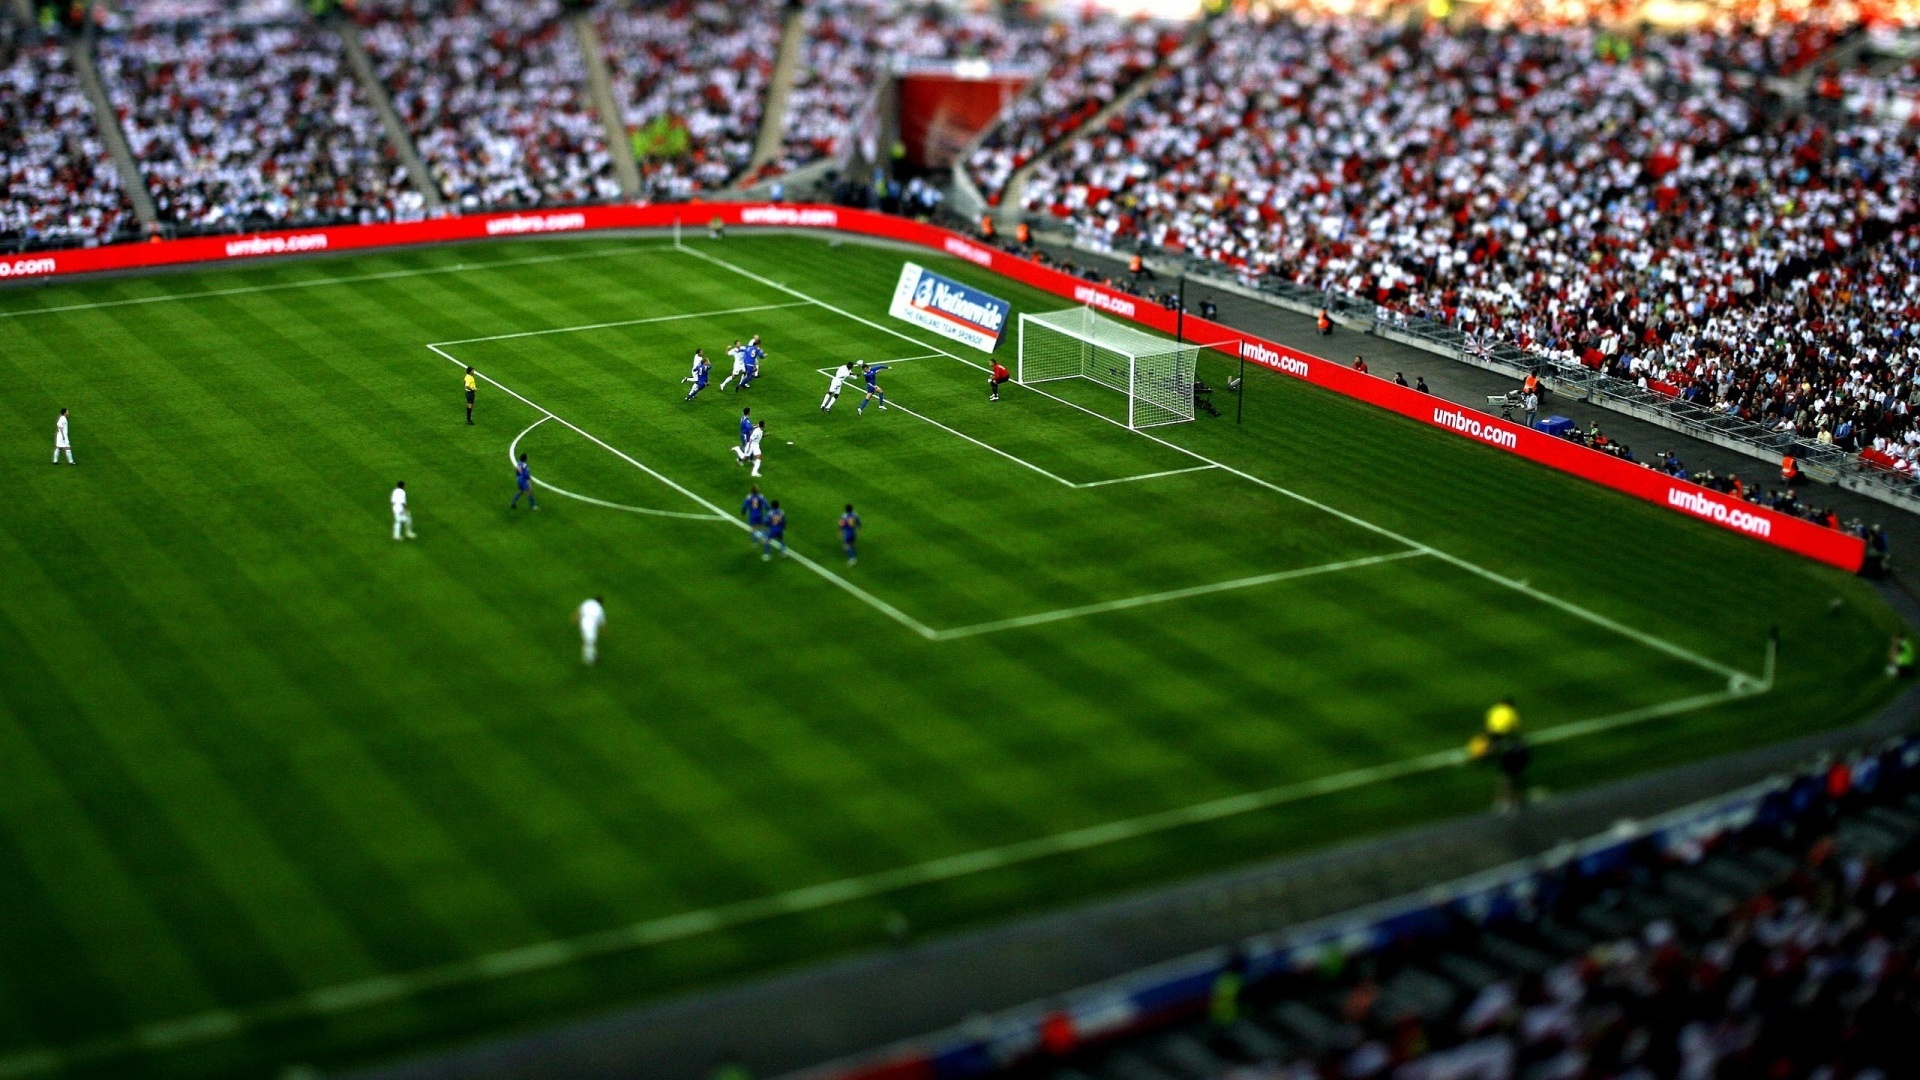 FIFA International Soccer